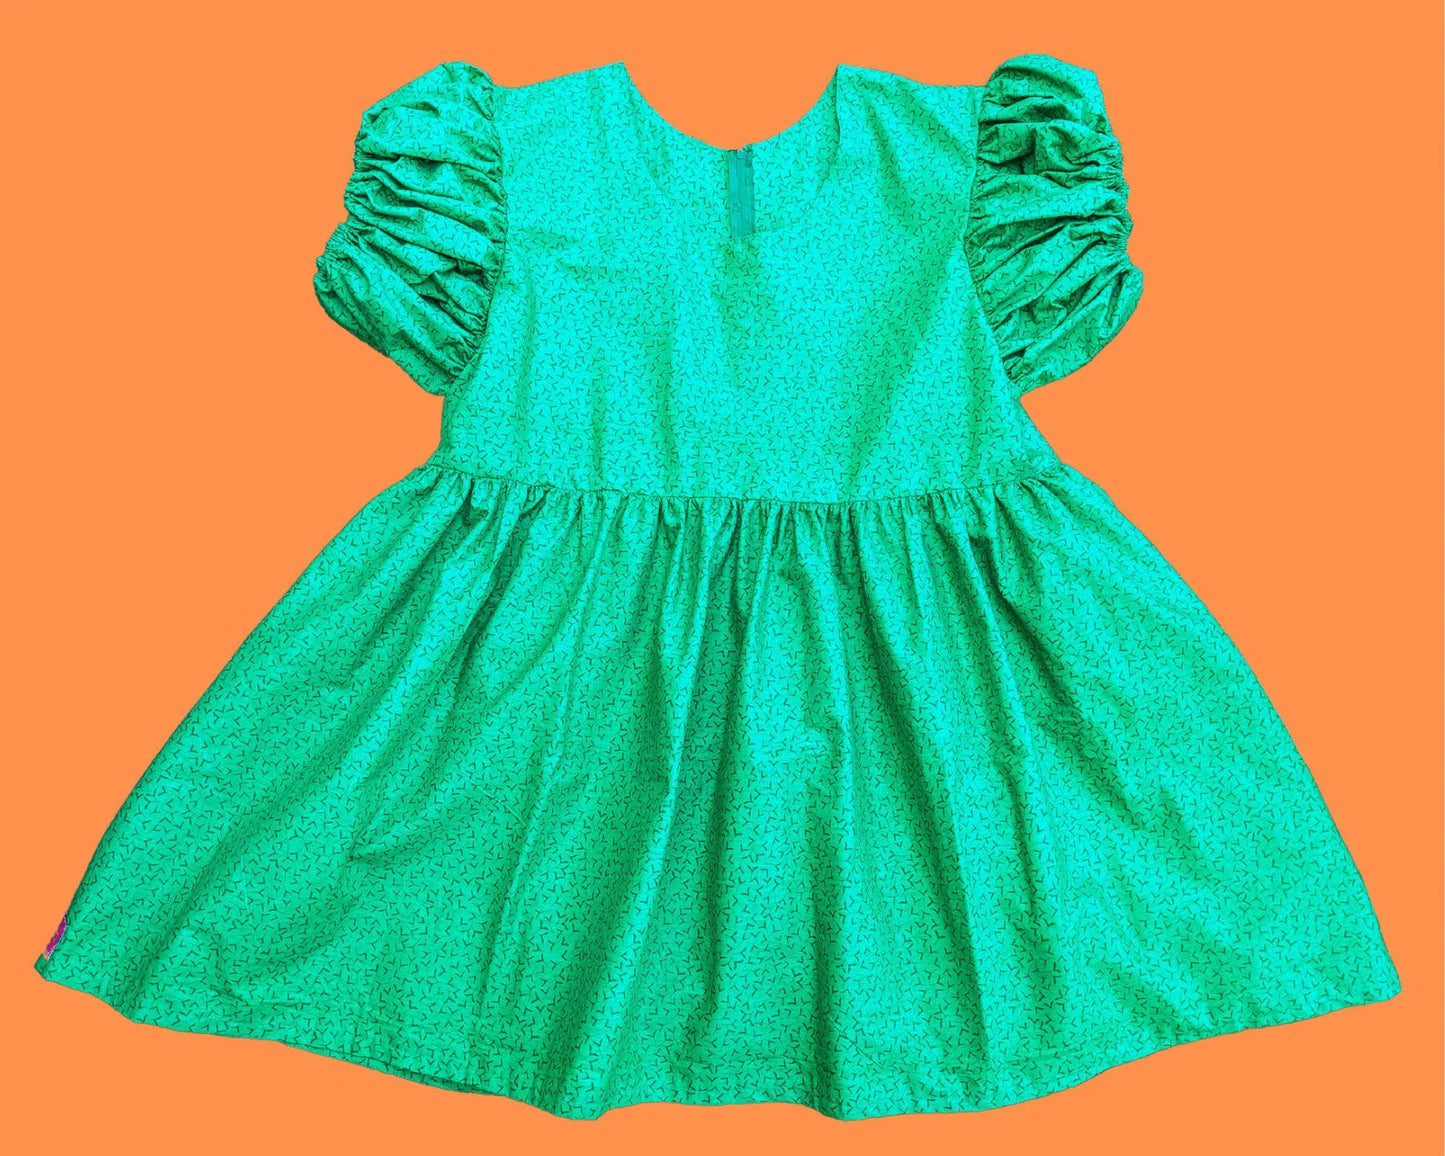 Robe vert émeraude recyclée faite à la main, grande taille, manches courtes bouffantes taille 2XL